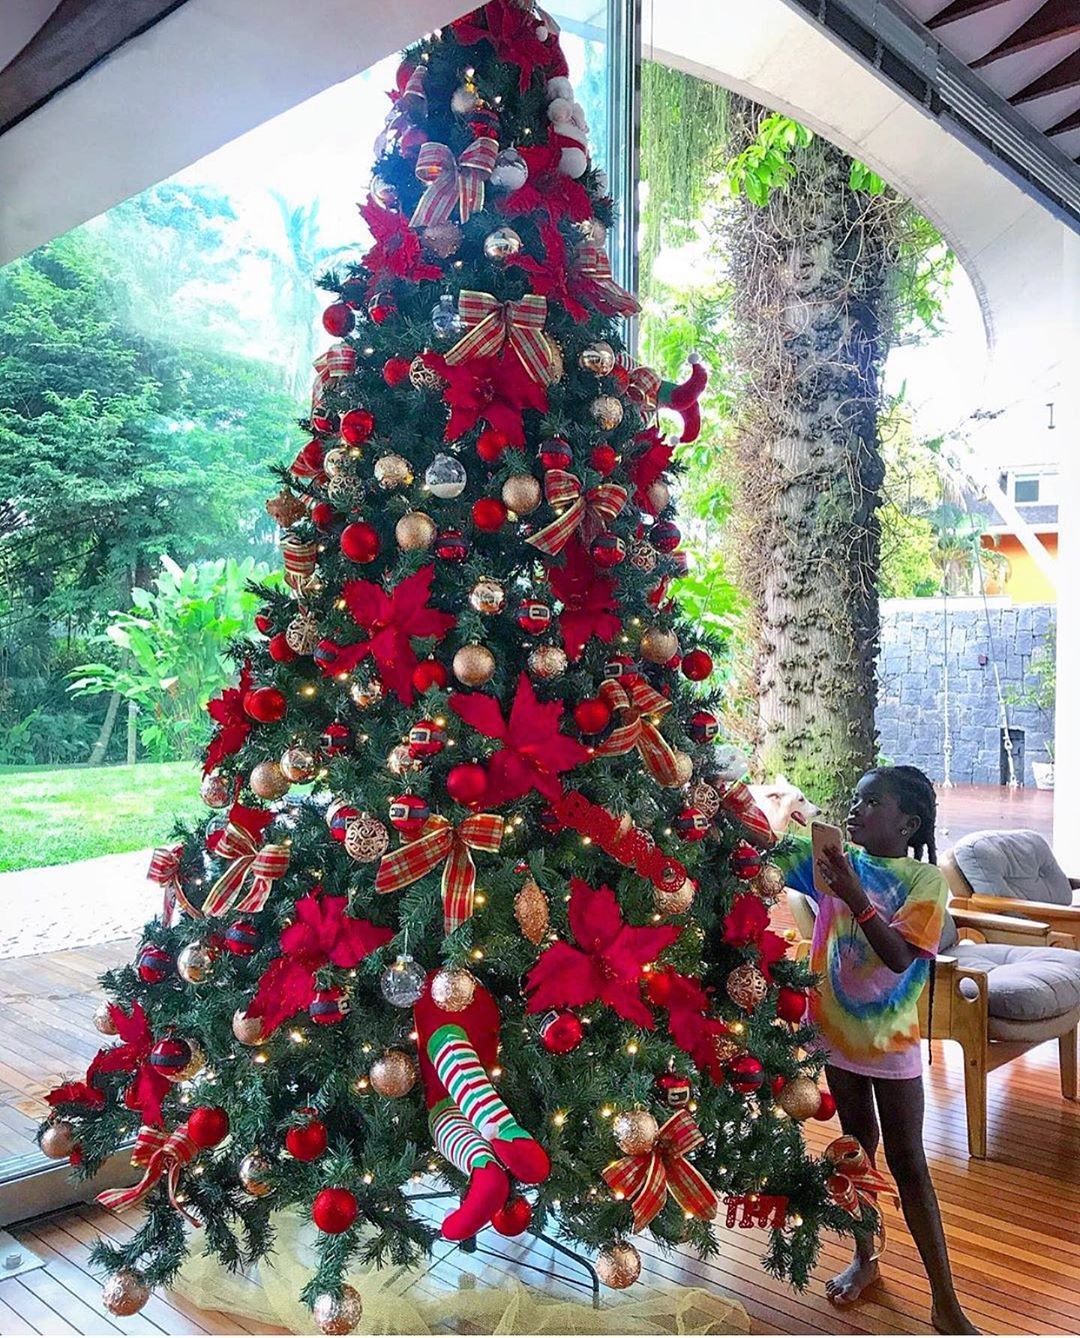 Titi com a árvore de Natal (Foto: Reprodução)